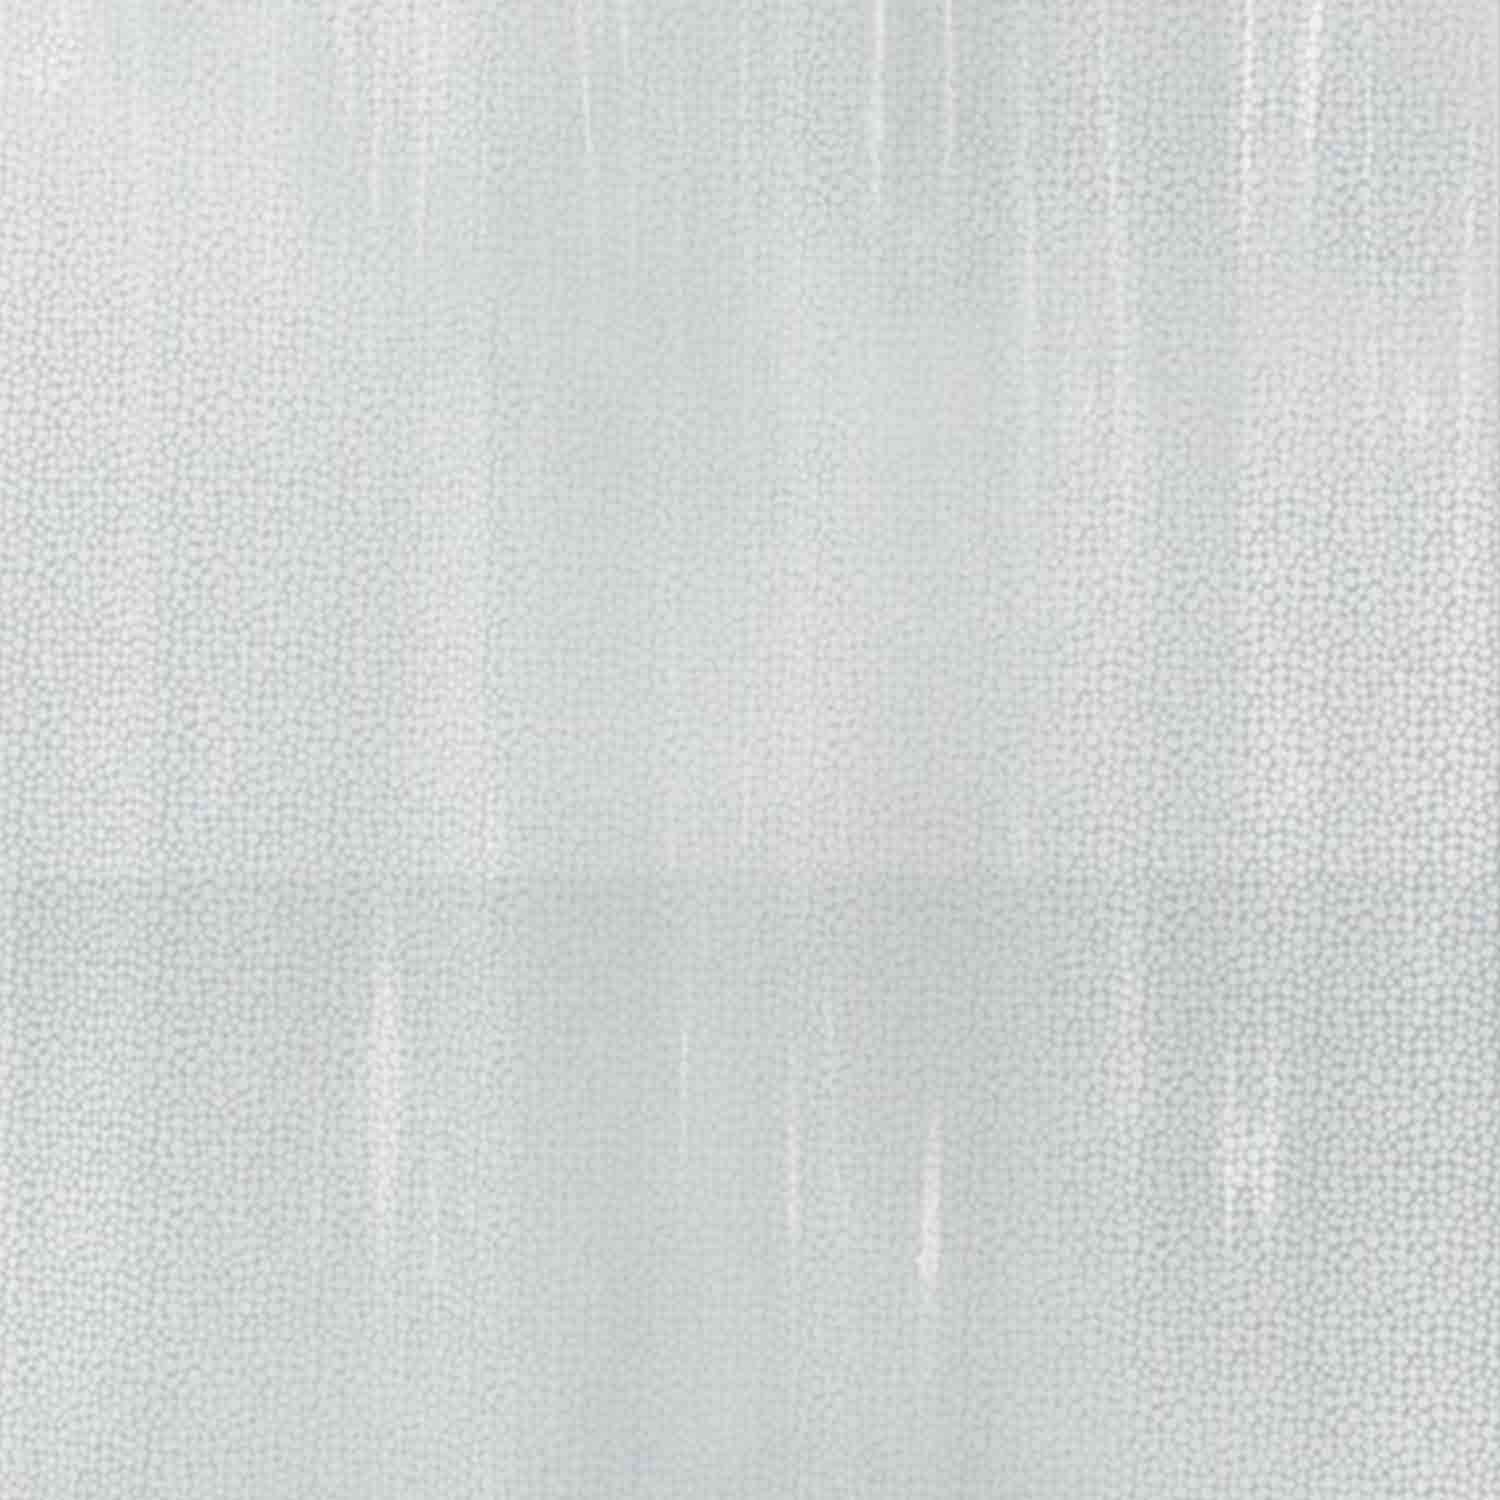 Vinyl-Duschvorhang mit weißen Punkten, 180x200cm